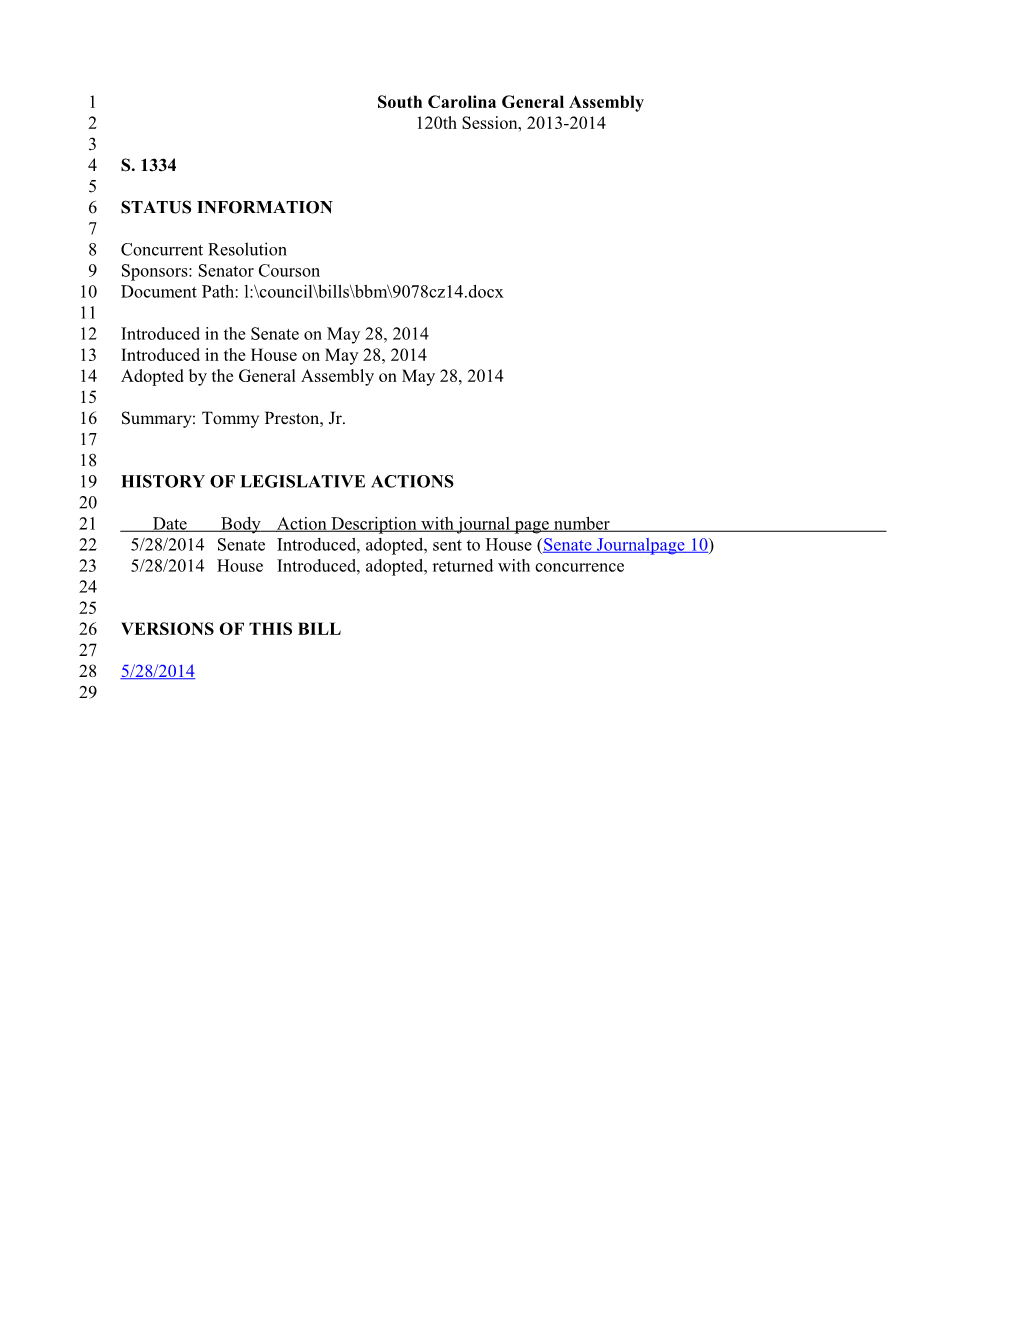 2013-2014 Bill 1334: Tommy Preston, Jr. - South Carolina Legislature Online